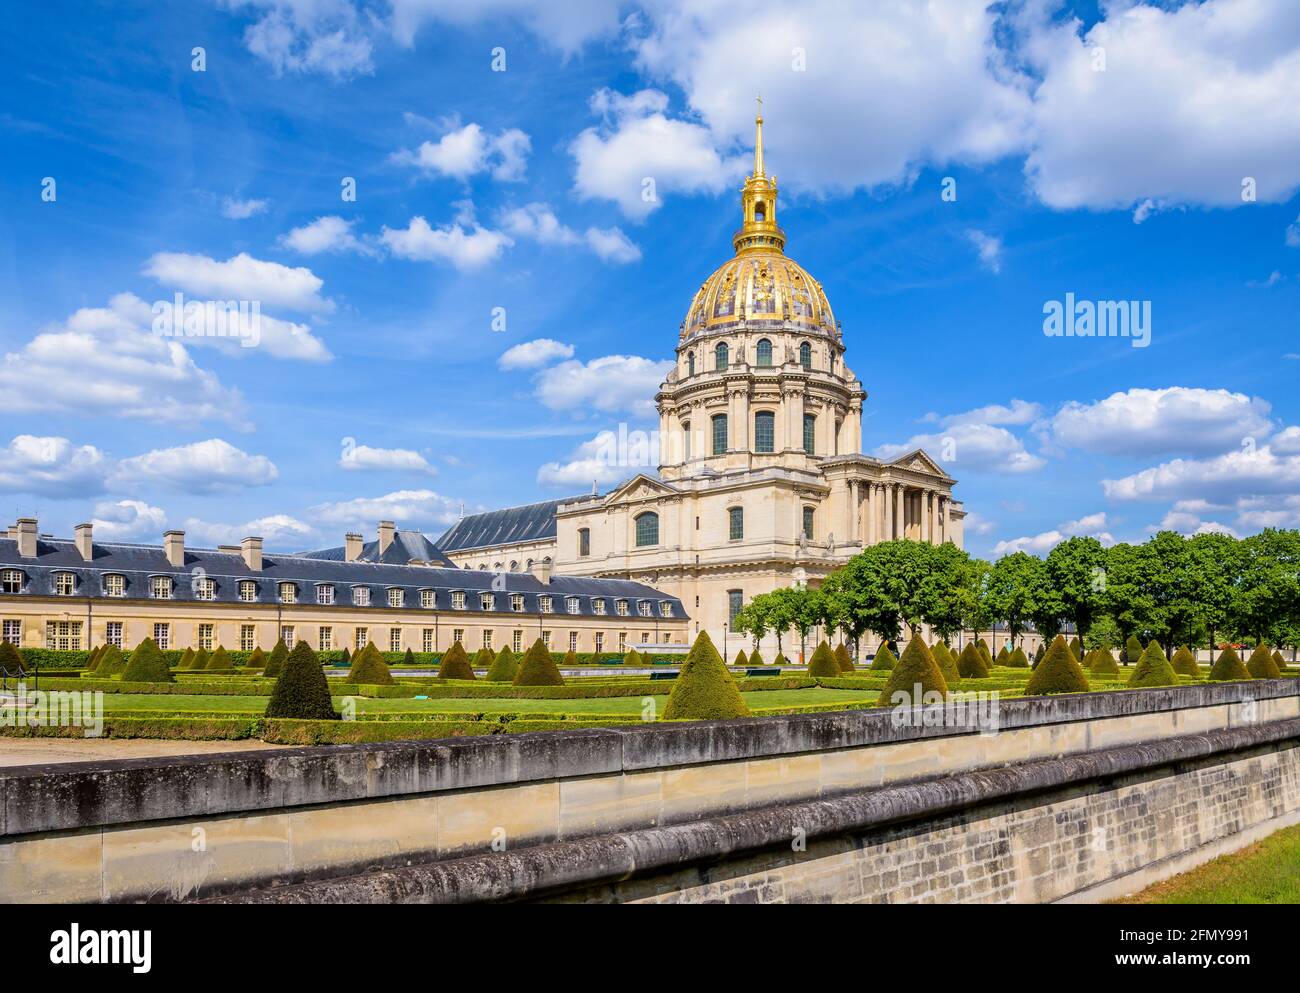 Der Invalidendom in Paris, Frankreich, eine ehemalige Kirche mit einer goldenen Kuppel, in der sich das Grab von Napoleon Bonaparte befindet, und der Südwestgarten. Stockfoto